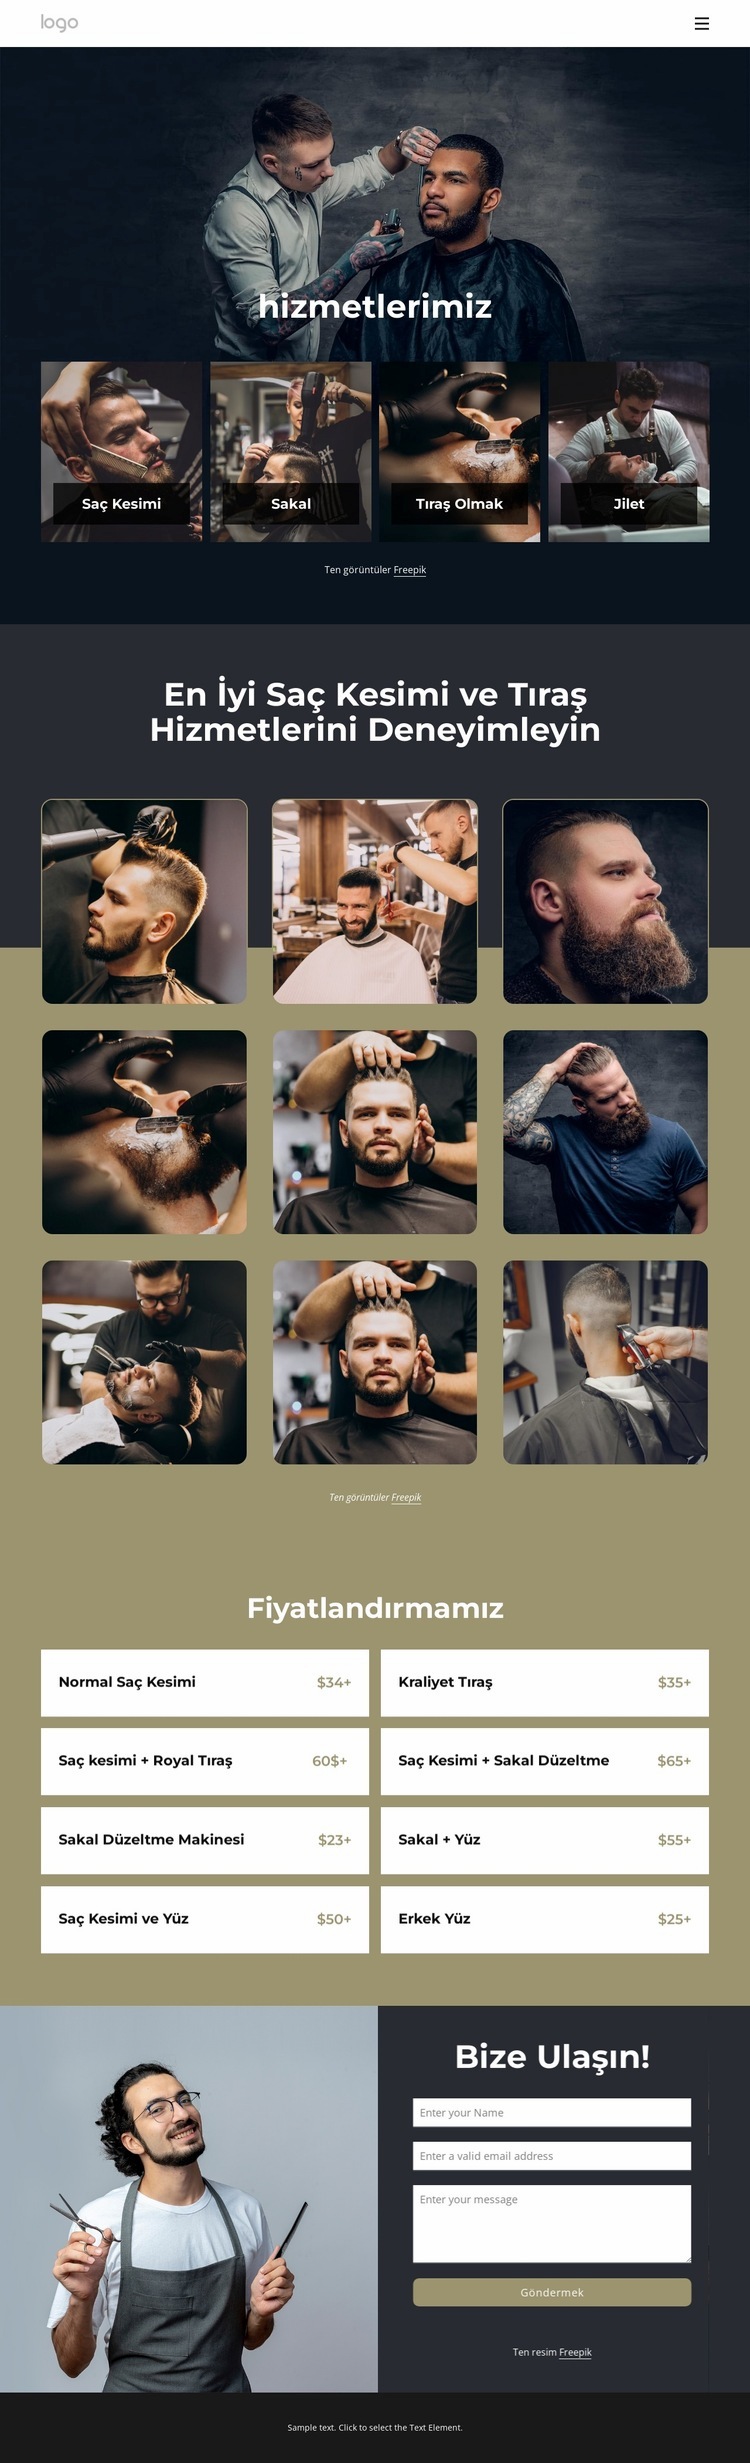 En iyi saç kesimi ve tıraş hizmetleri Bir Sayfa Şablonu